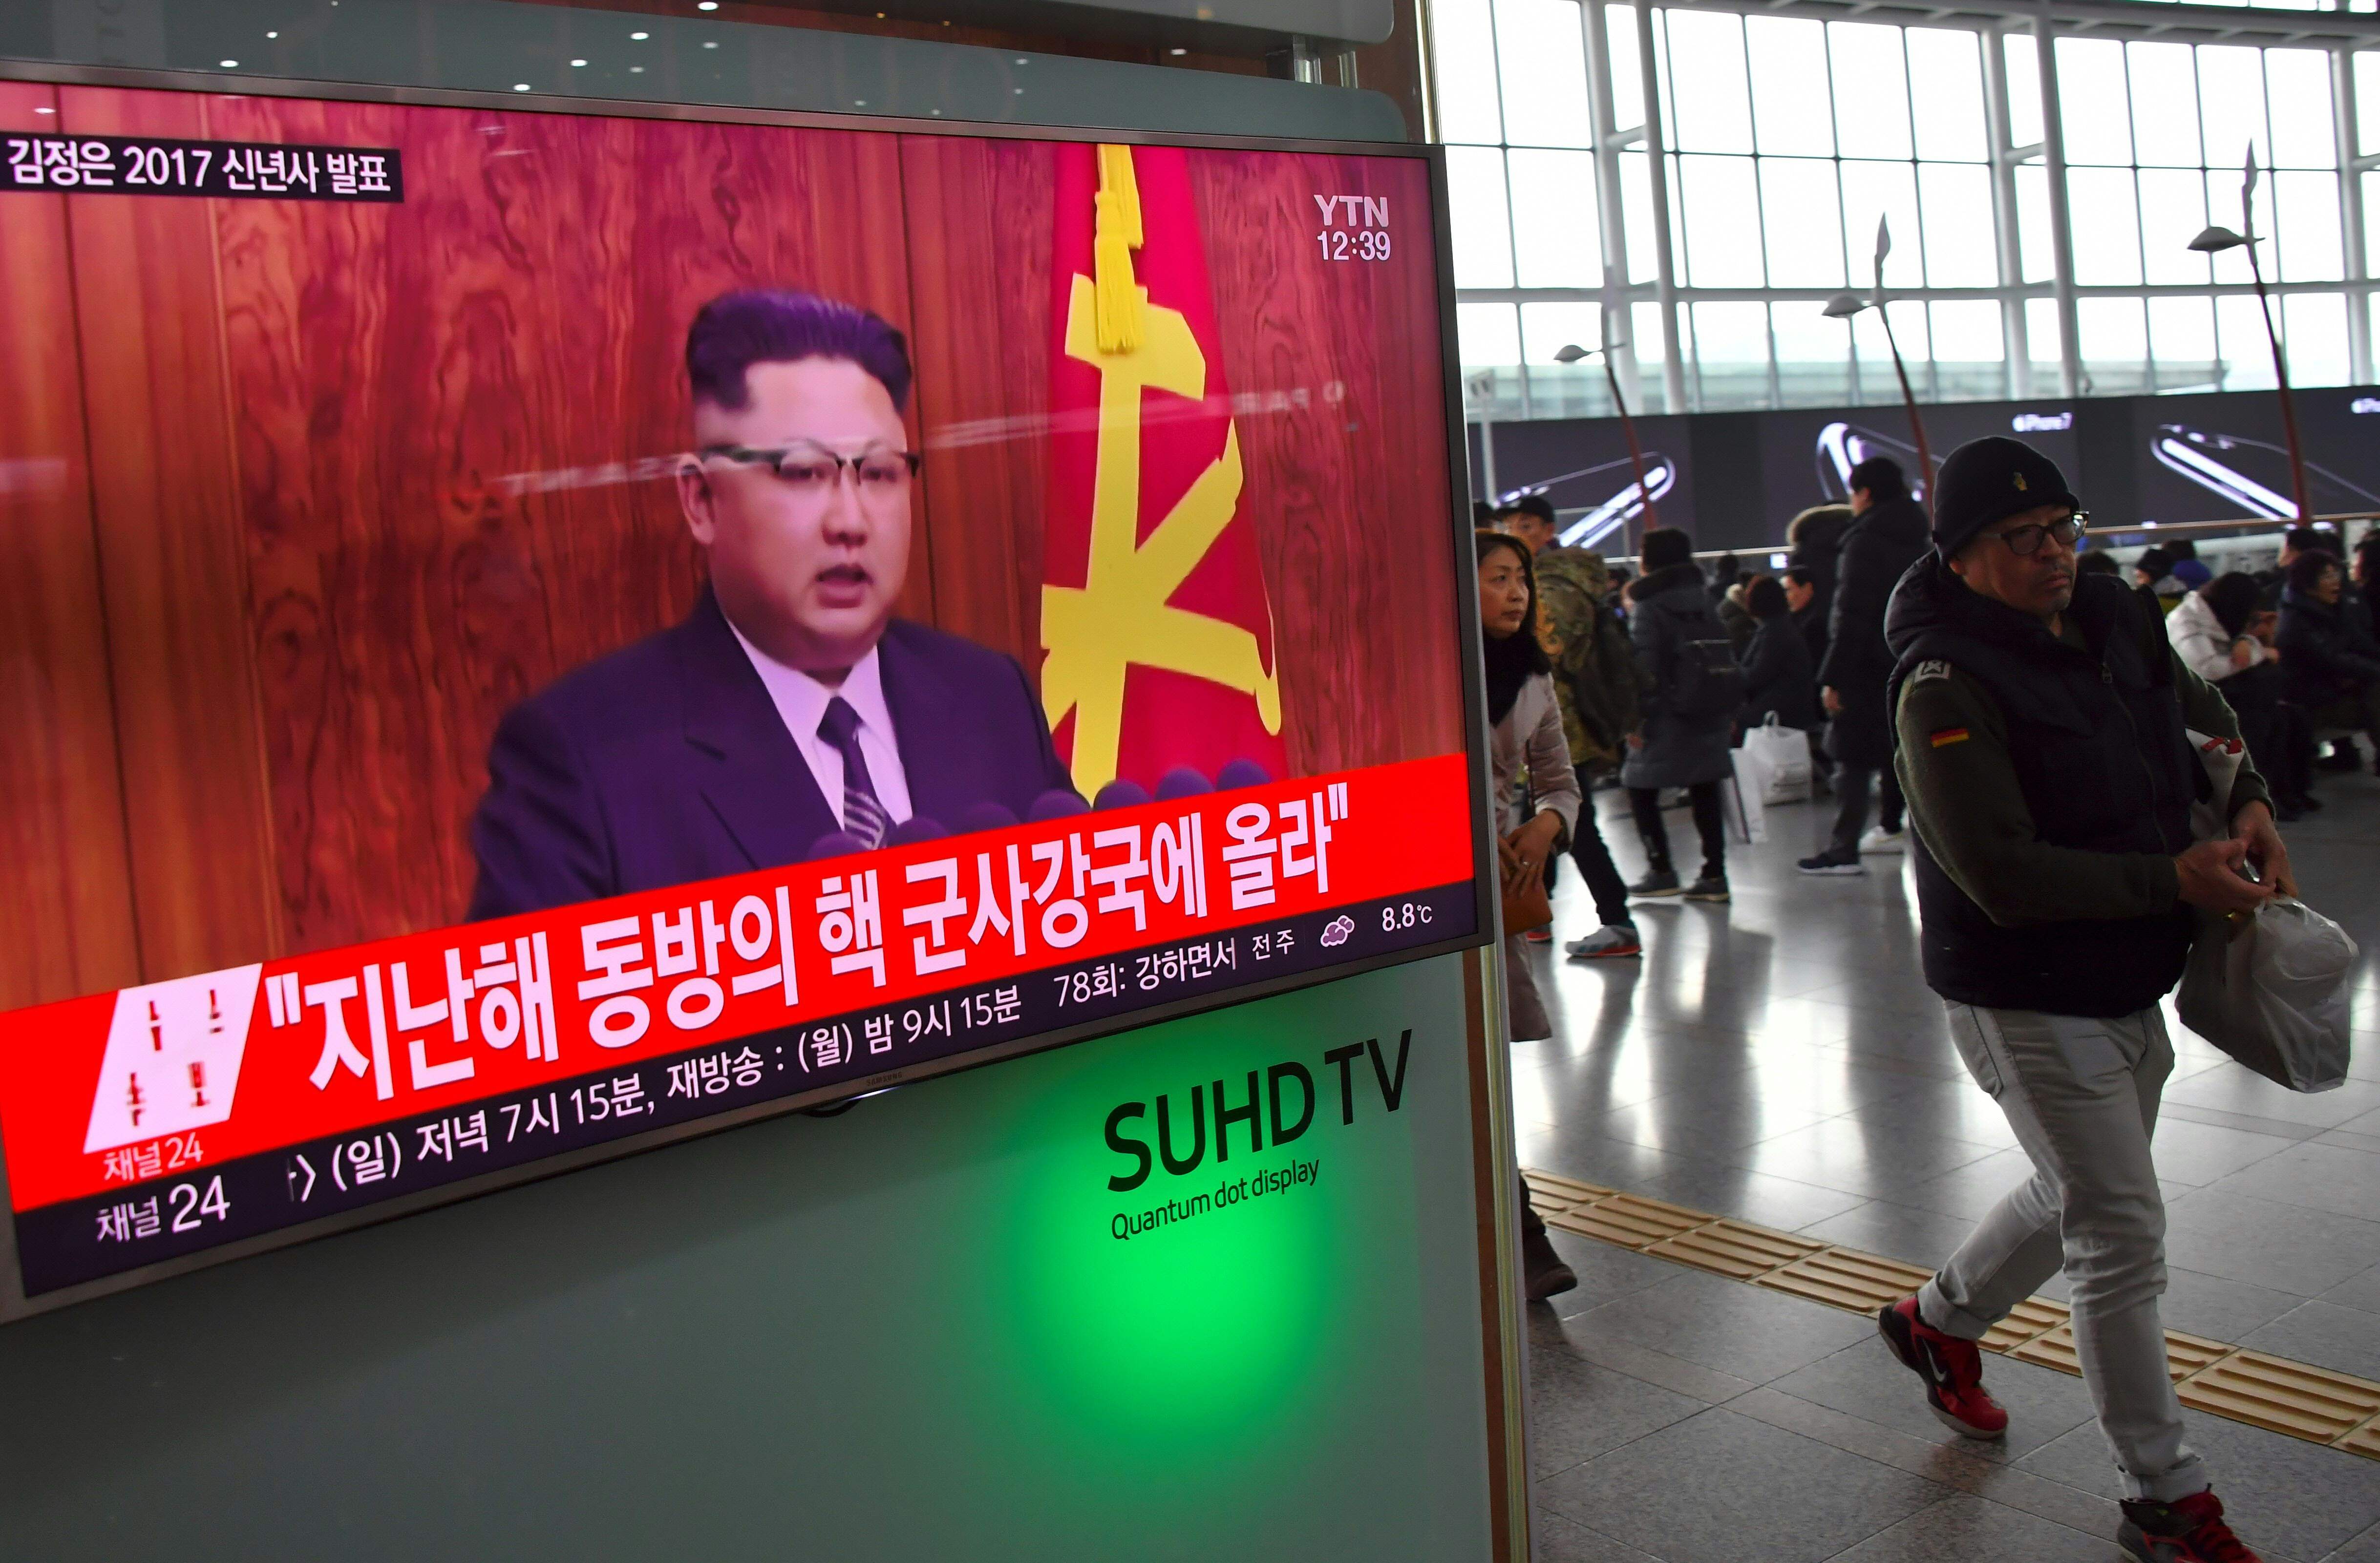  زعيم كوريا الشمالية يتحدث عن قرب اطلاق صاروخ بالستى 